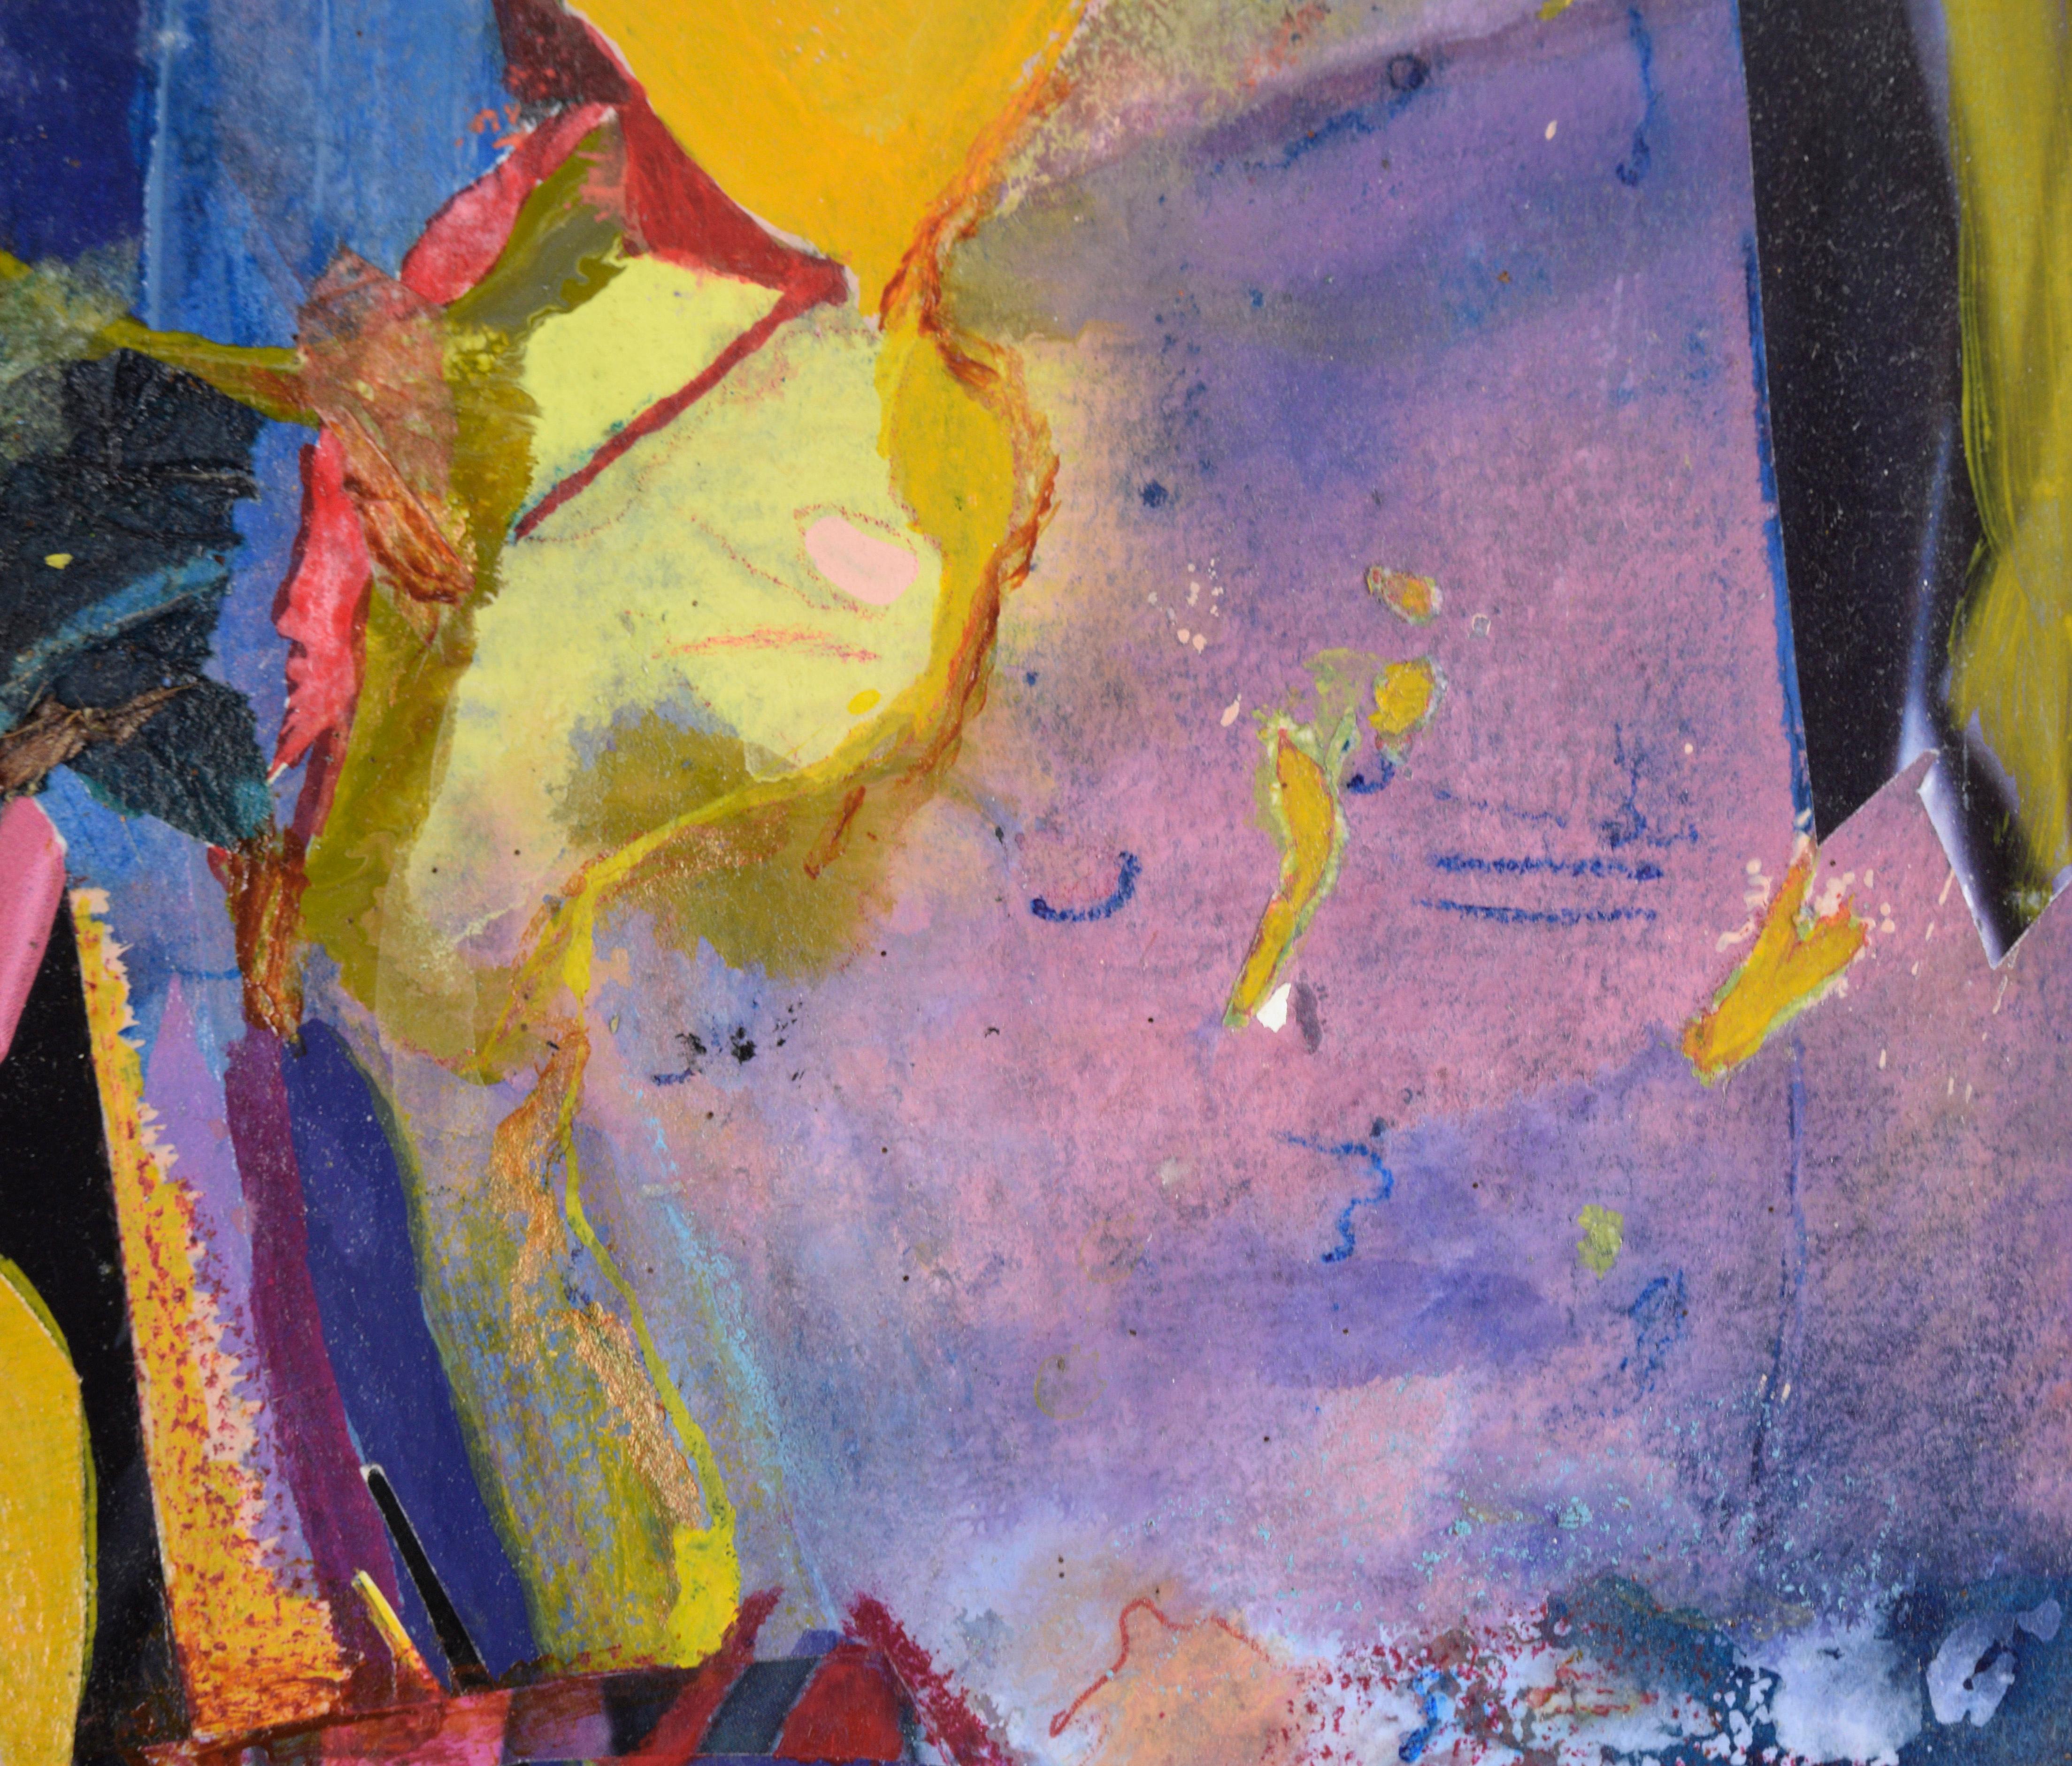 Carnival Abstract in Blau, Magenta und Gelb - Öl und Collage auf Papier

Helles und farbenfrohes abstraktes Bild von Jennie T. Rafton (Amerikanerin, geb. 1925). Die Formen sind über die Seite verstreut und implizieren Bewegung und Bewegung. Die